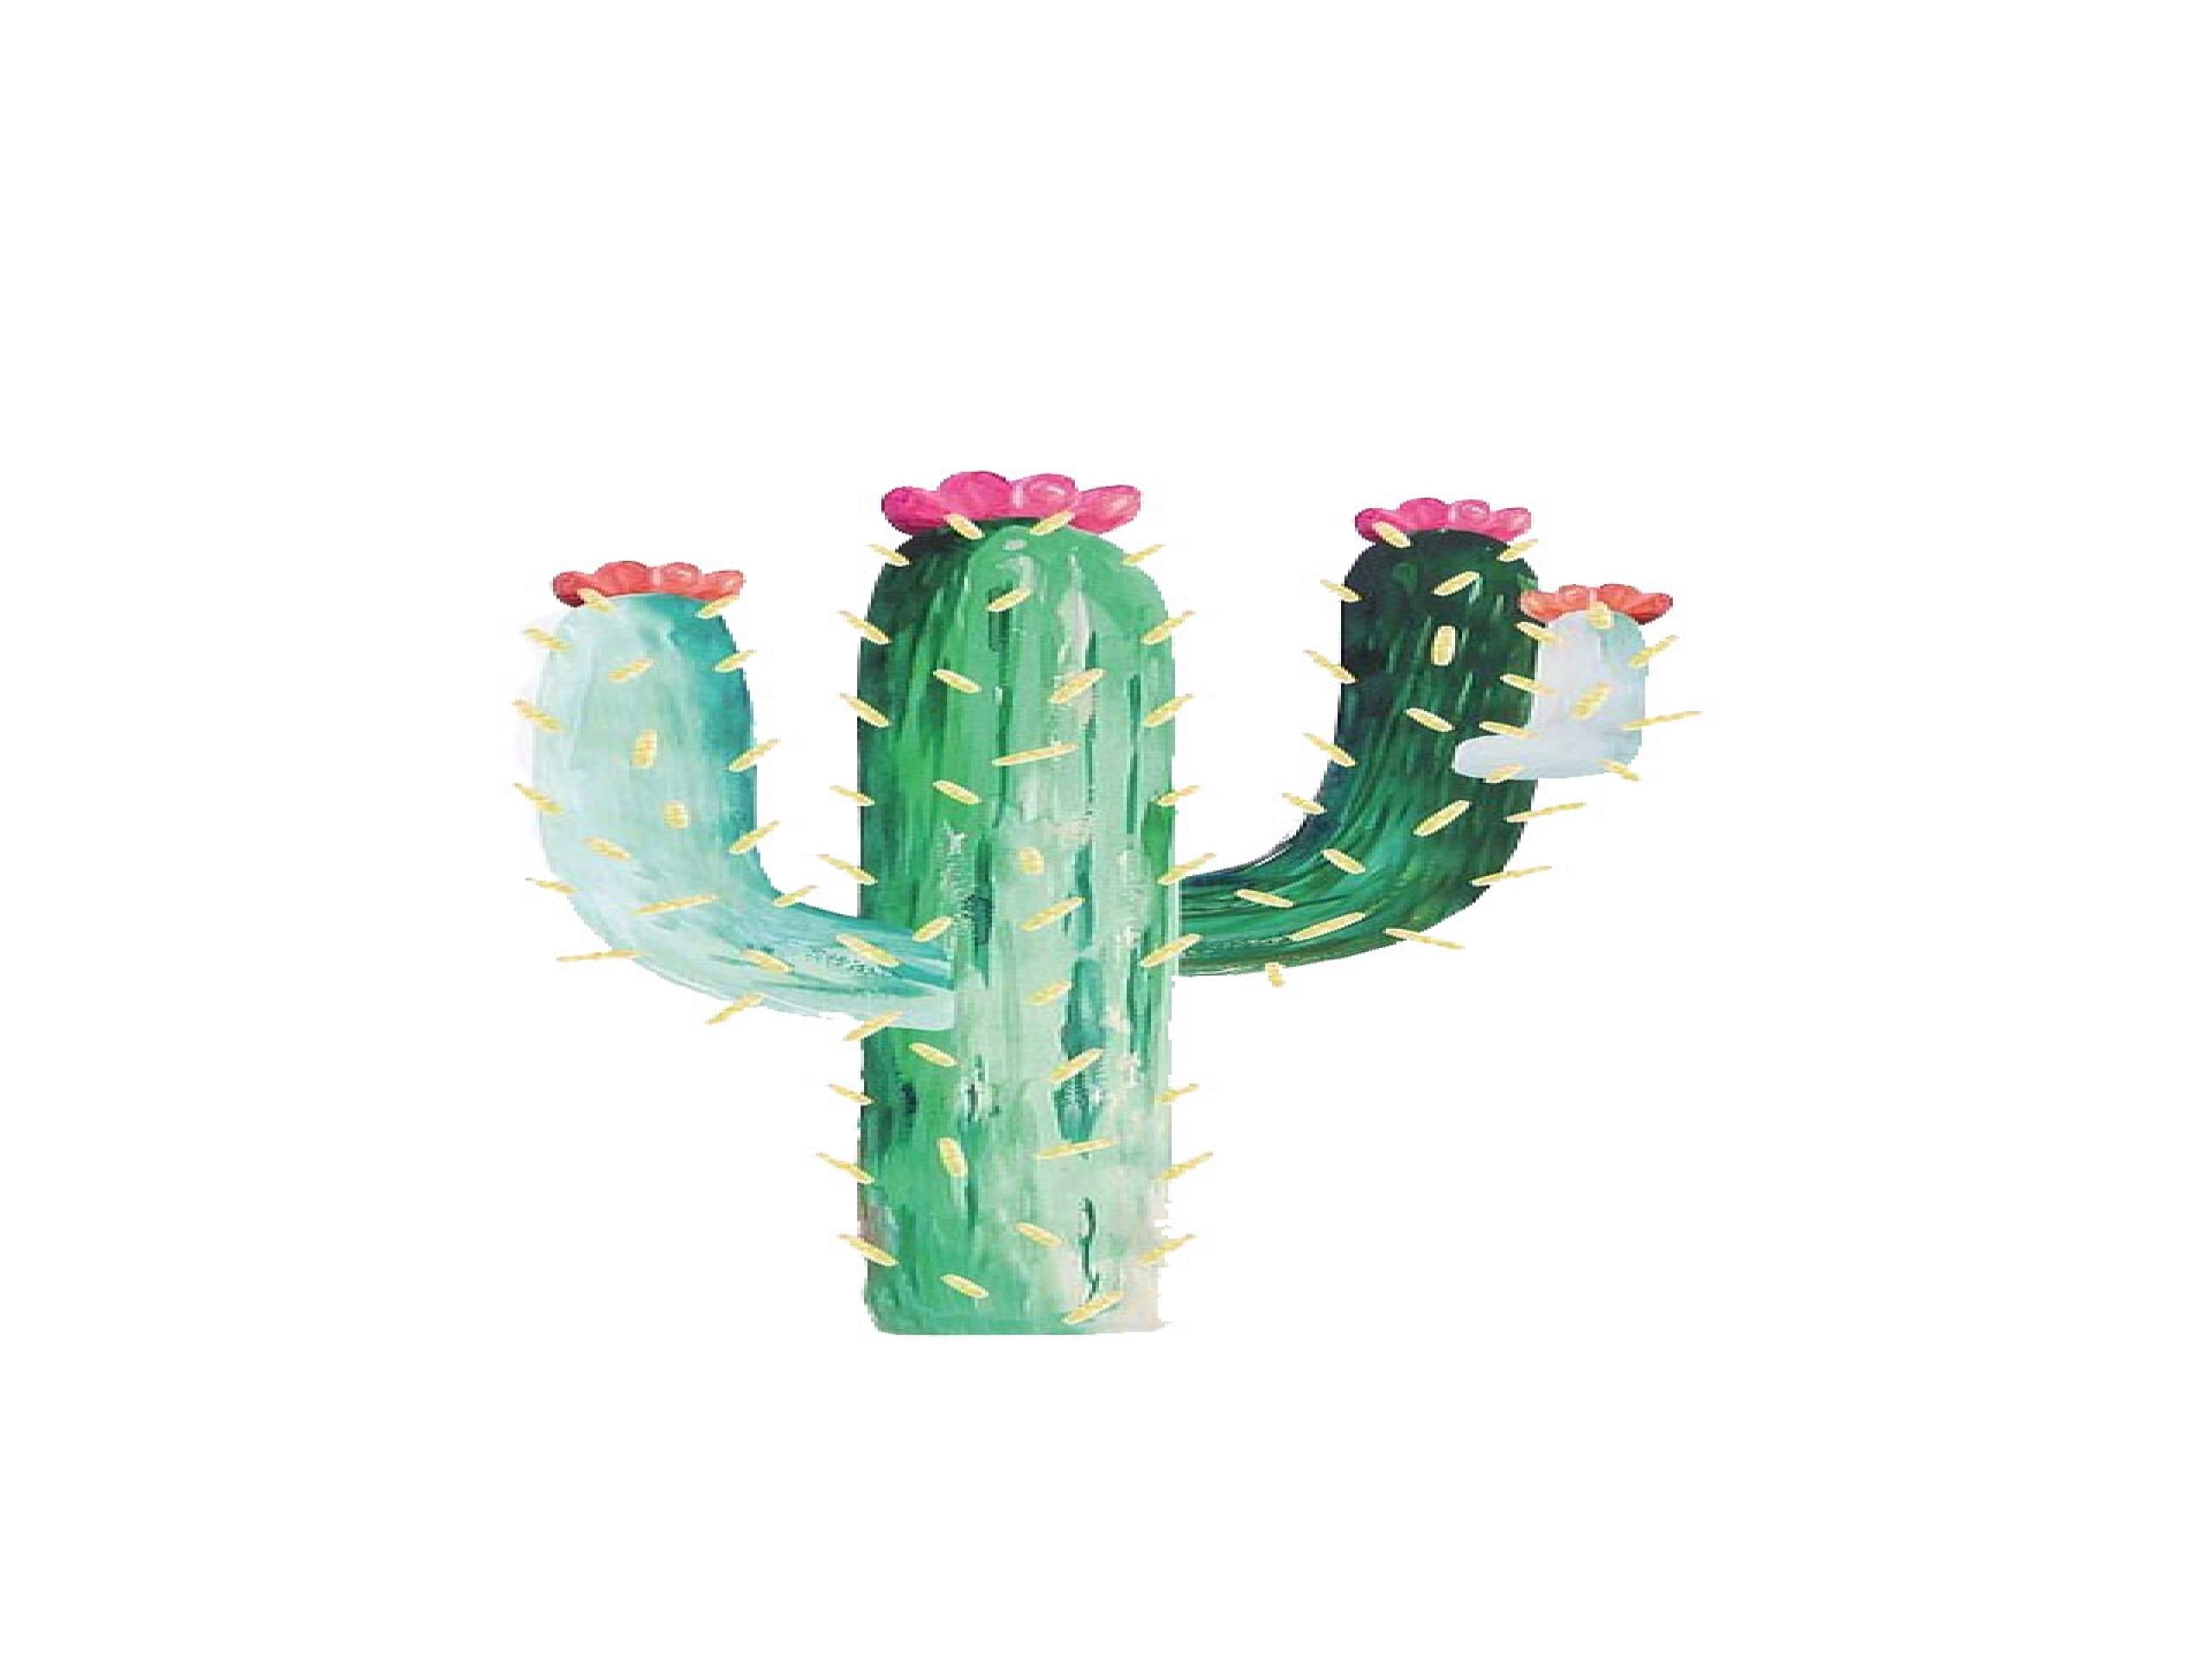 Fondos de Cactus gratis # 9A28MA1 - 4USkY